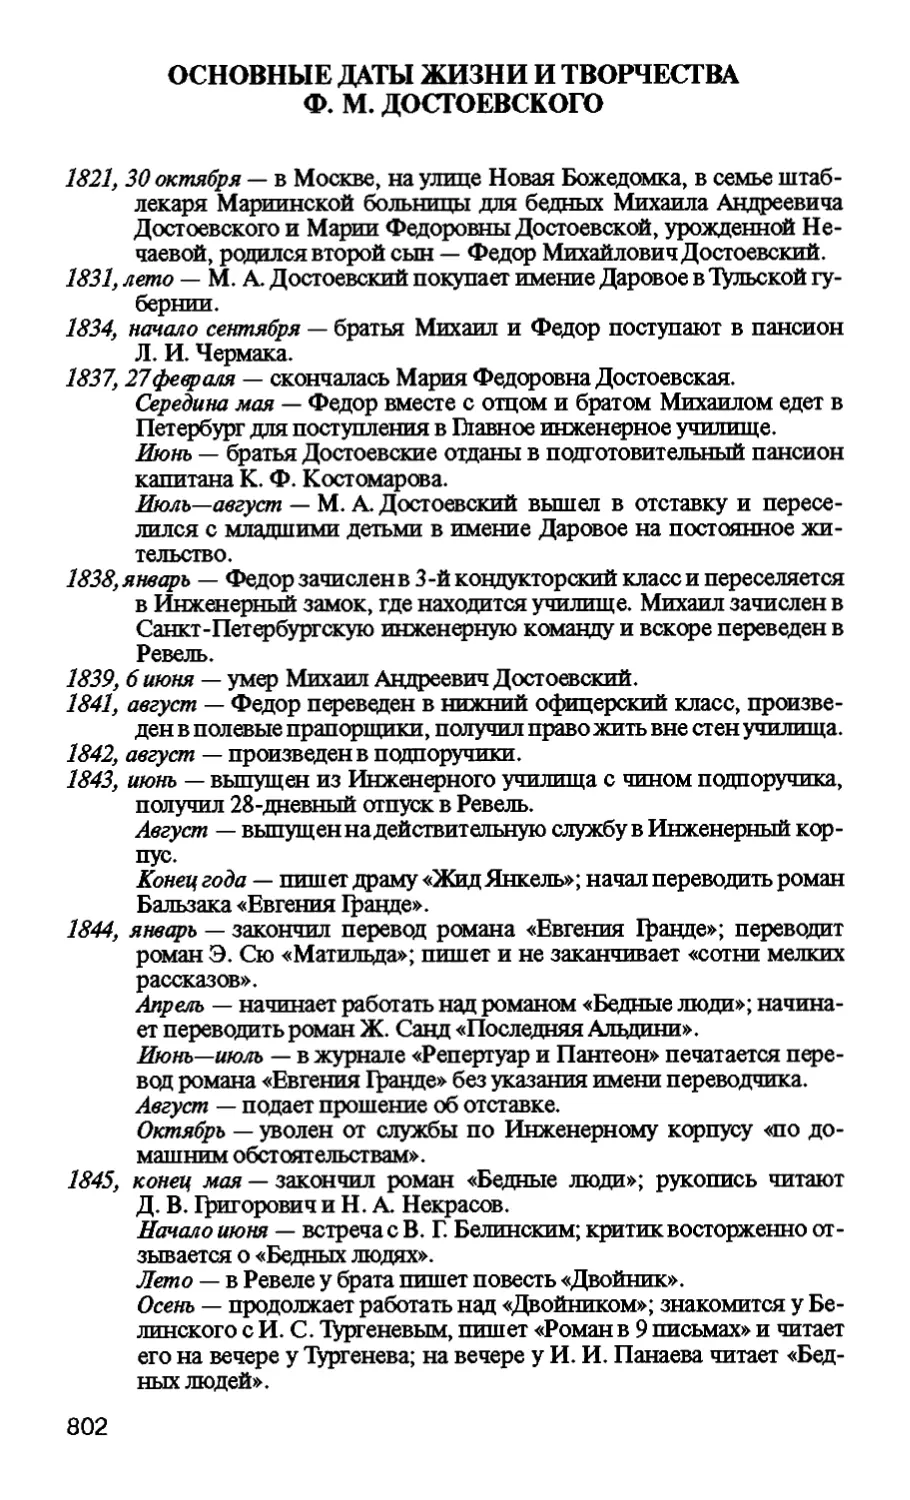 Основные даты жизни и творчества Ф. М. Достоевского